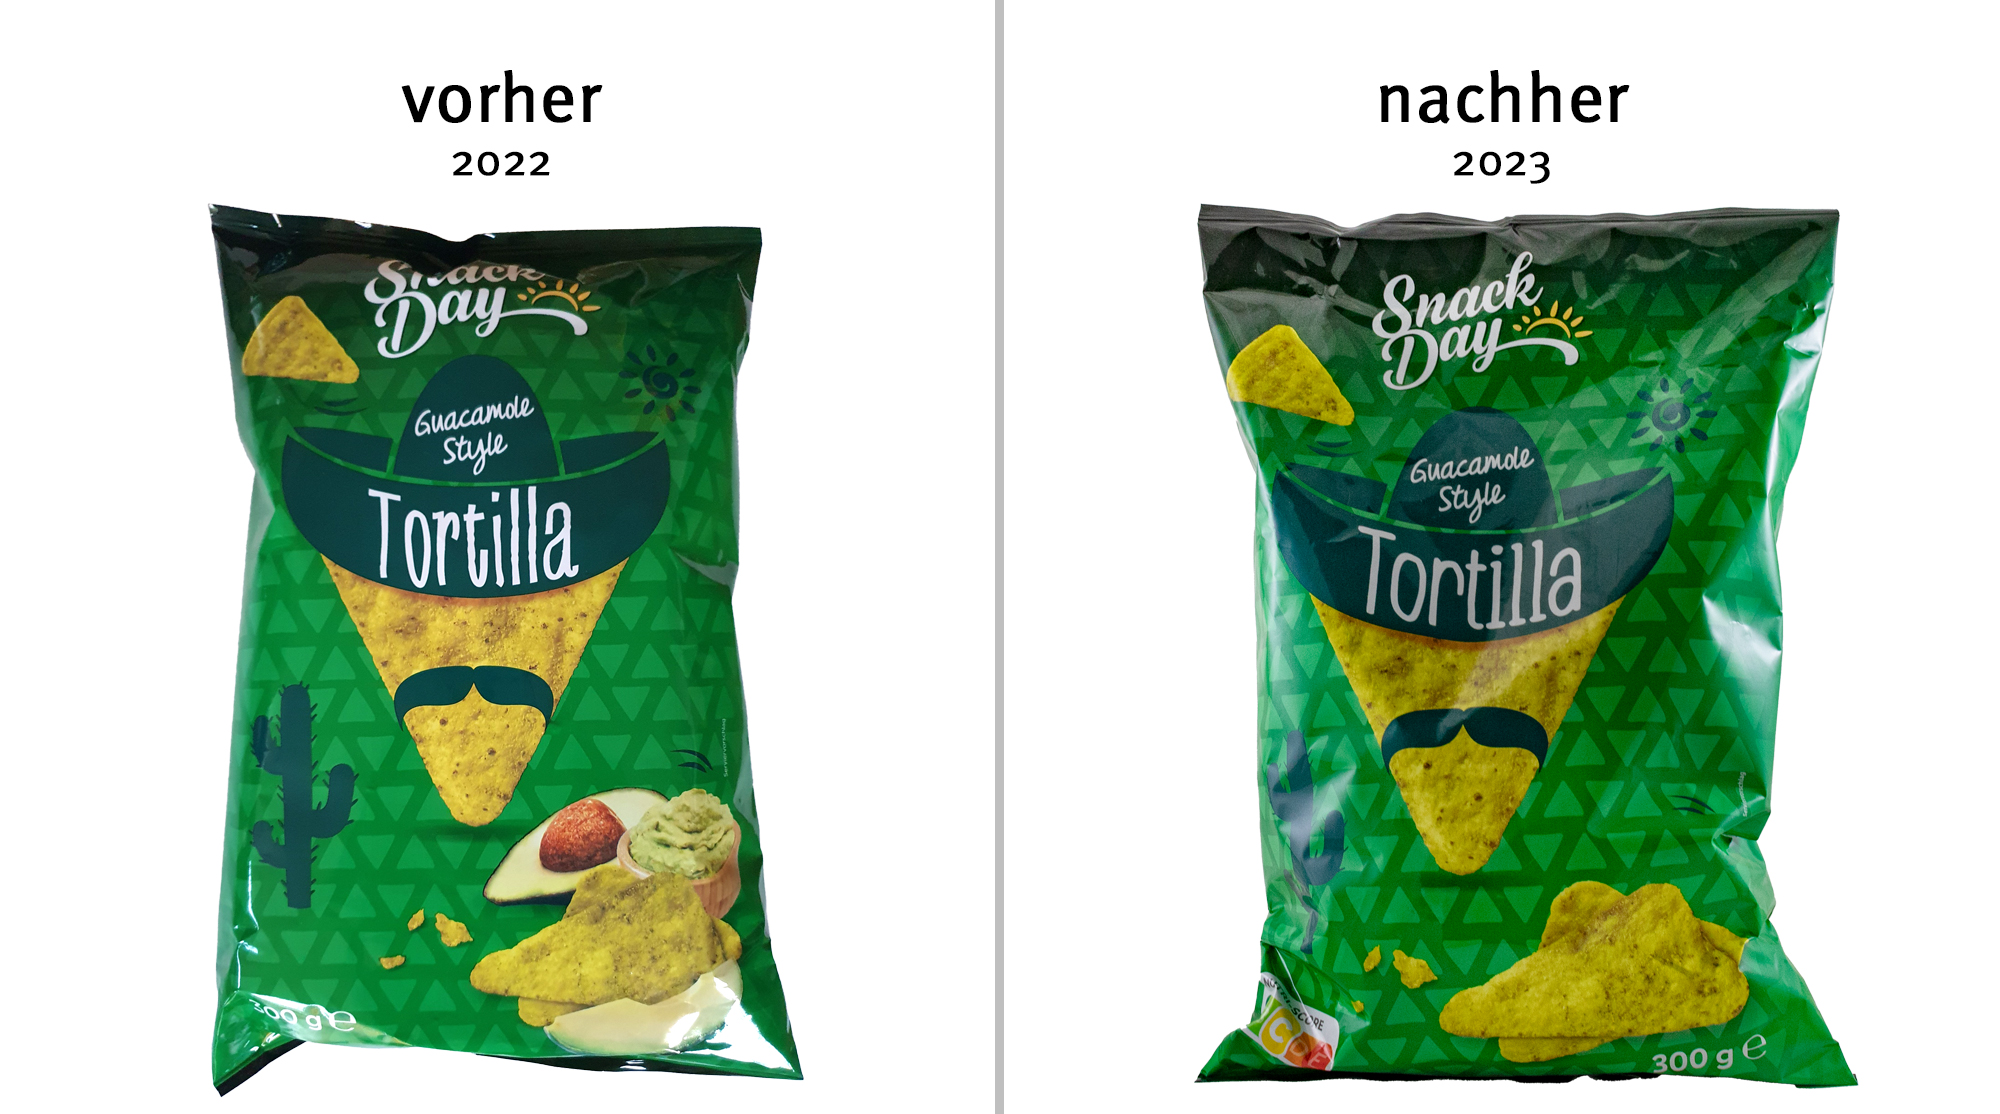 Abbildungen von Avocado und Guacamole entfernt | Lebensmittelklarheit